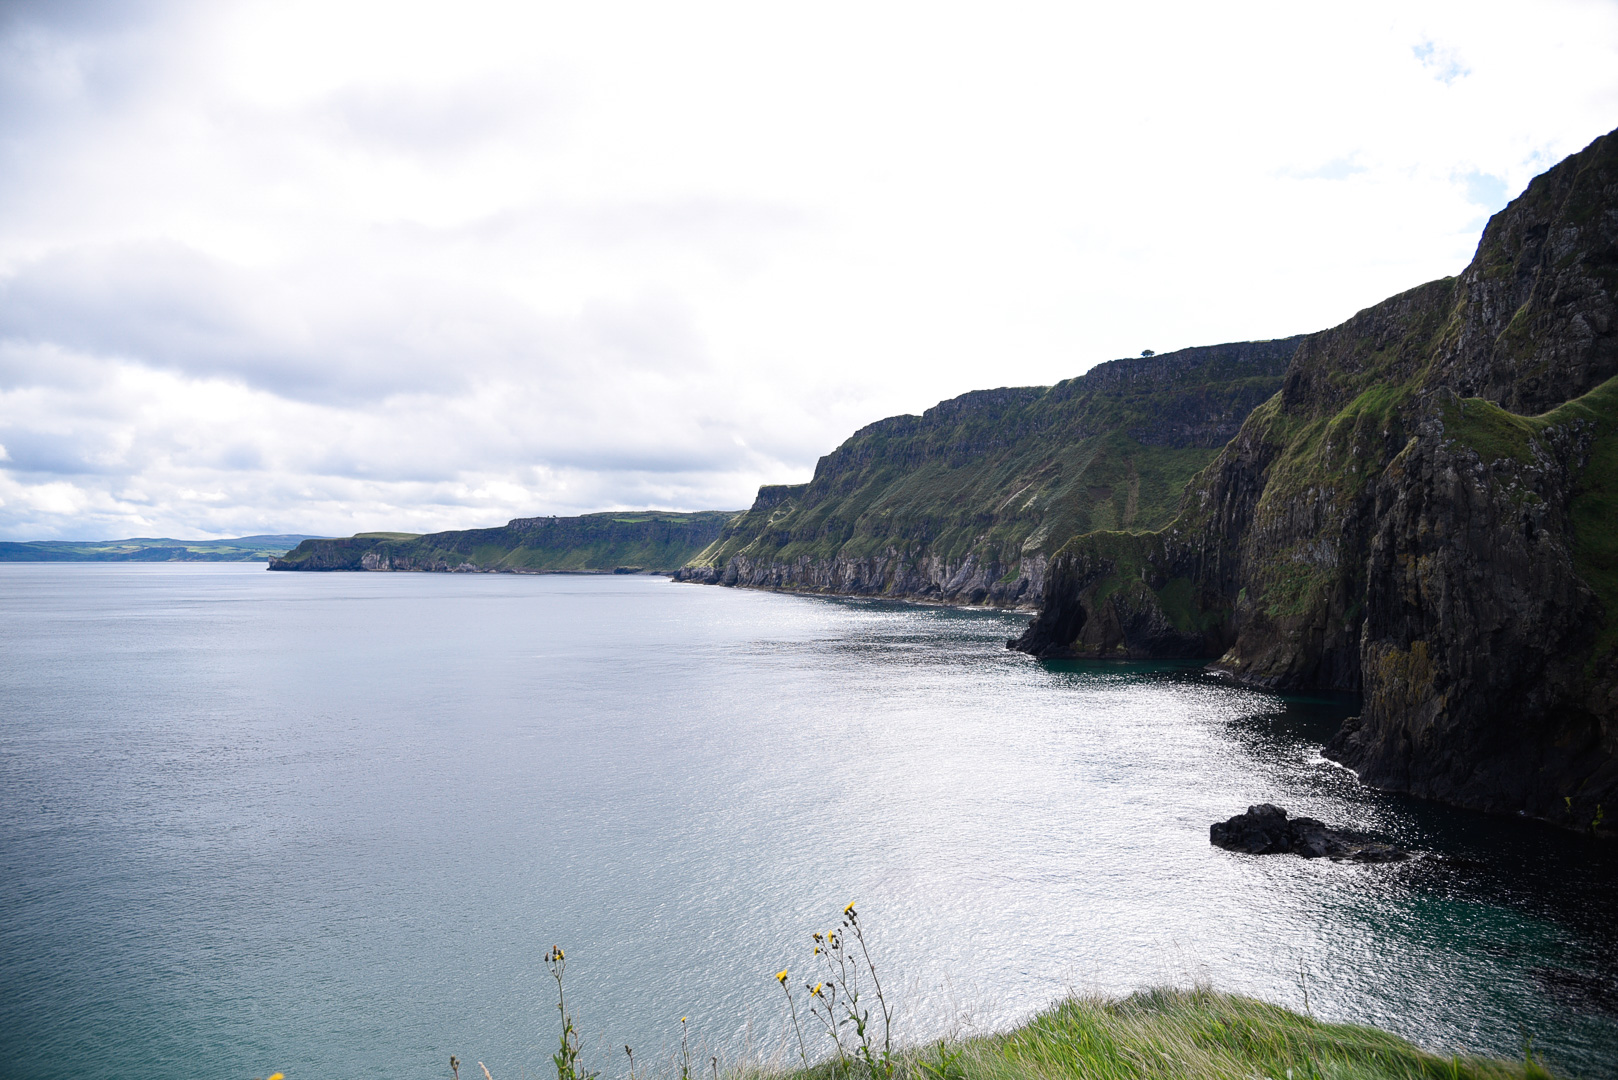 Seaside views in Northern Ireland. 